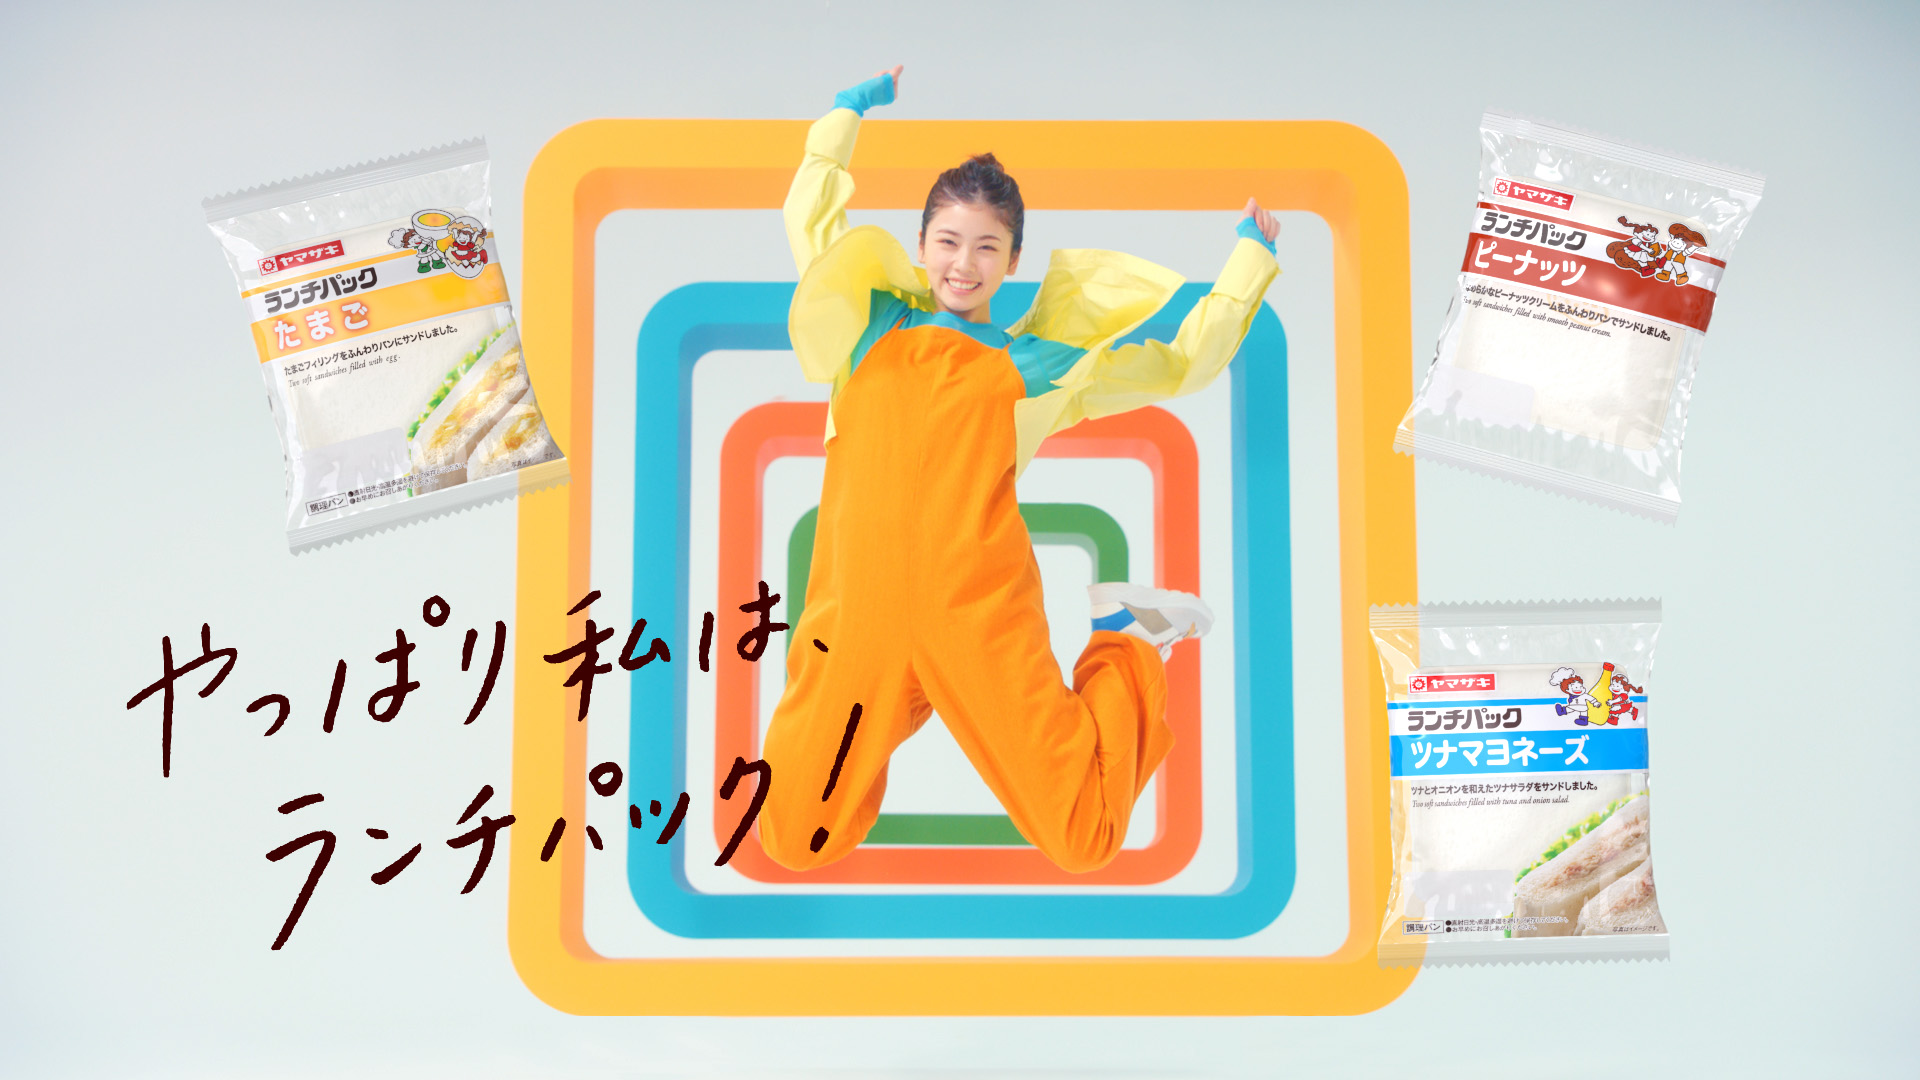 小芝風花さんがイメージキャラクターに はじける笑顔と大ジャンプに注目 山崎製パン株式会社のプレスリリース